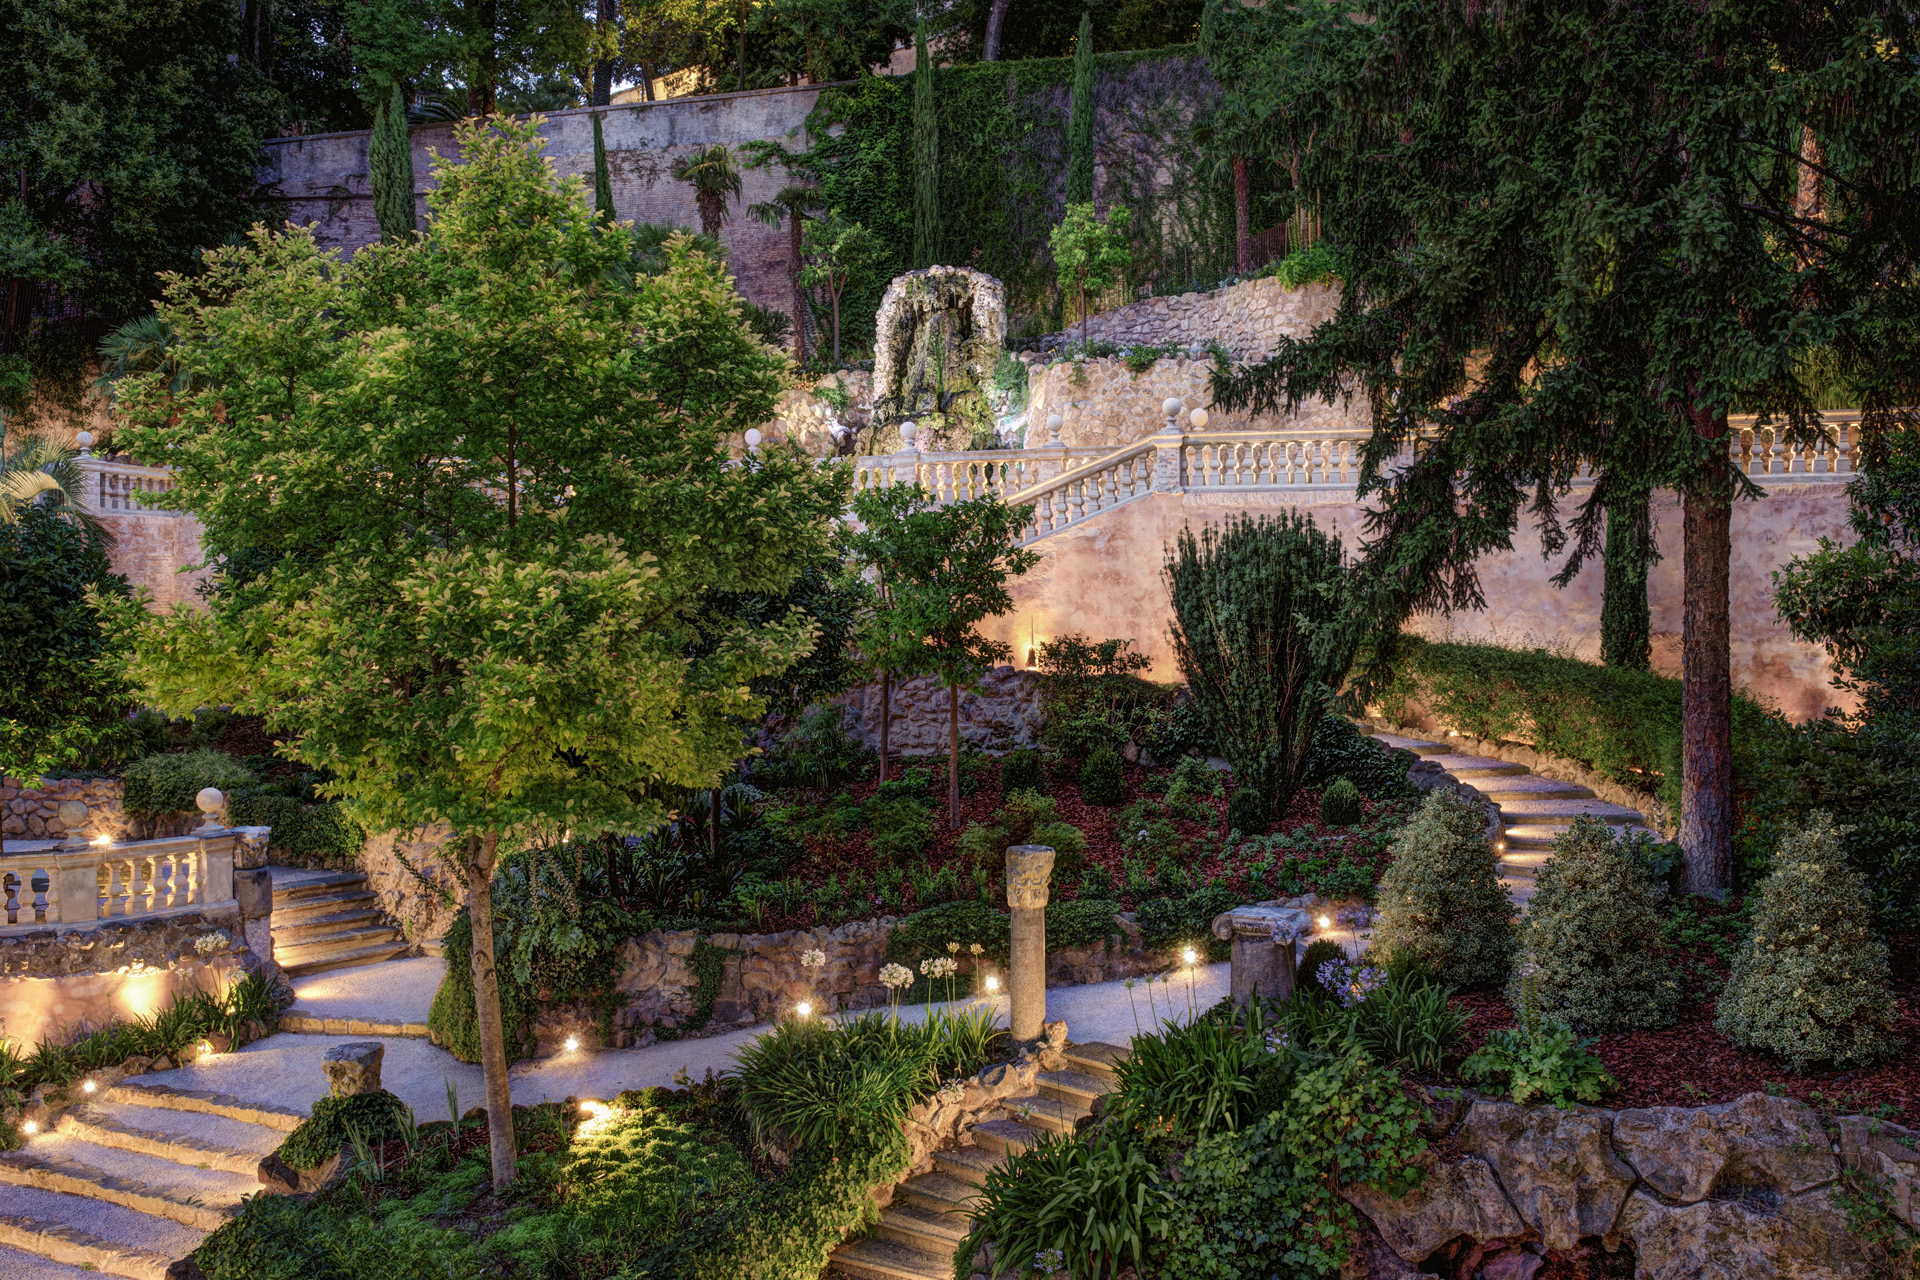 The secret garden at Hotel de Russie